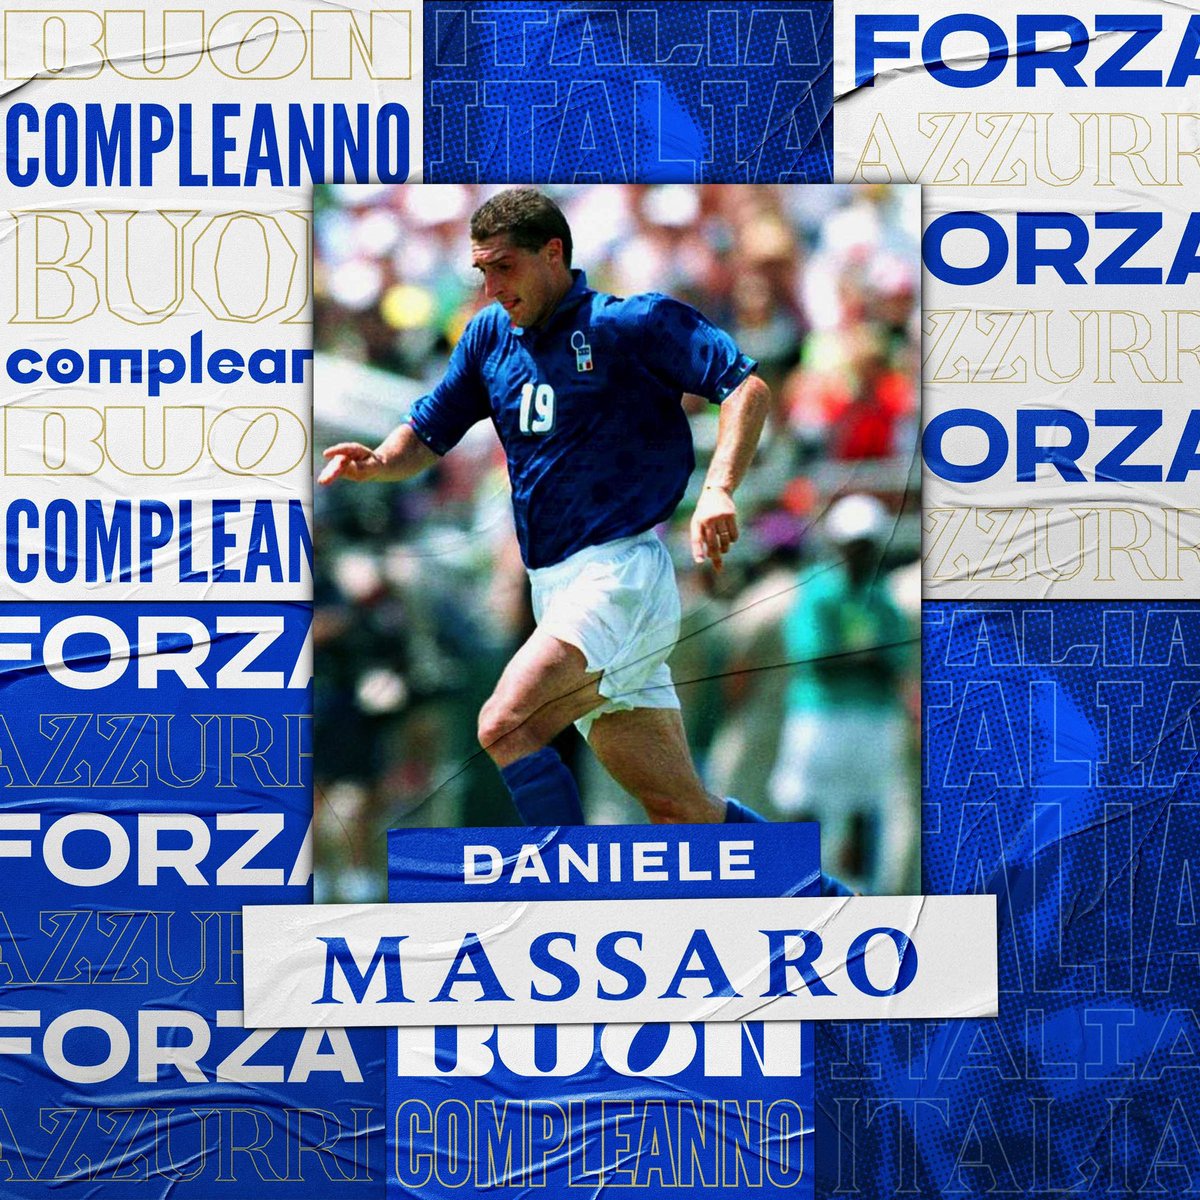 🎂 Buon compleanno a Daniele #Massaro che compie 63 anni!

🇮🇹 15 presenze e 1 gol in #Nazionale 
🏆 Campione del Mondo 1982

#Azzurri #VivoAzzurro